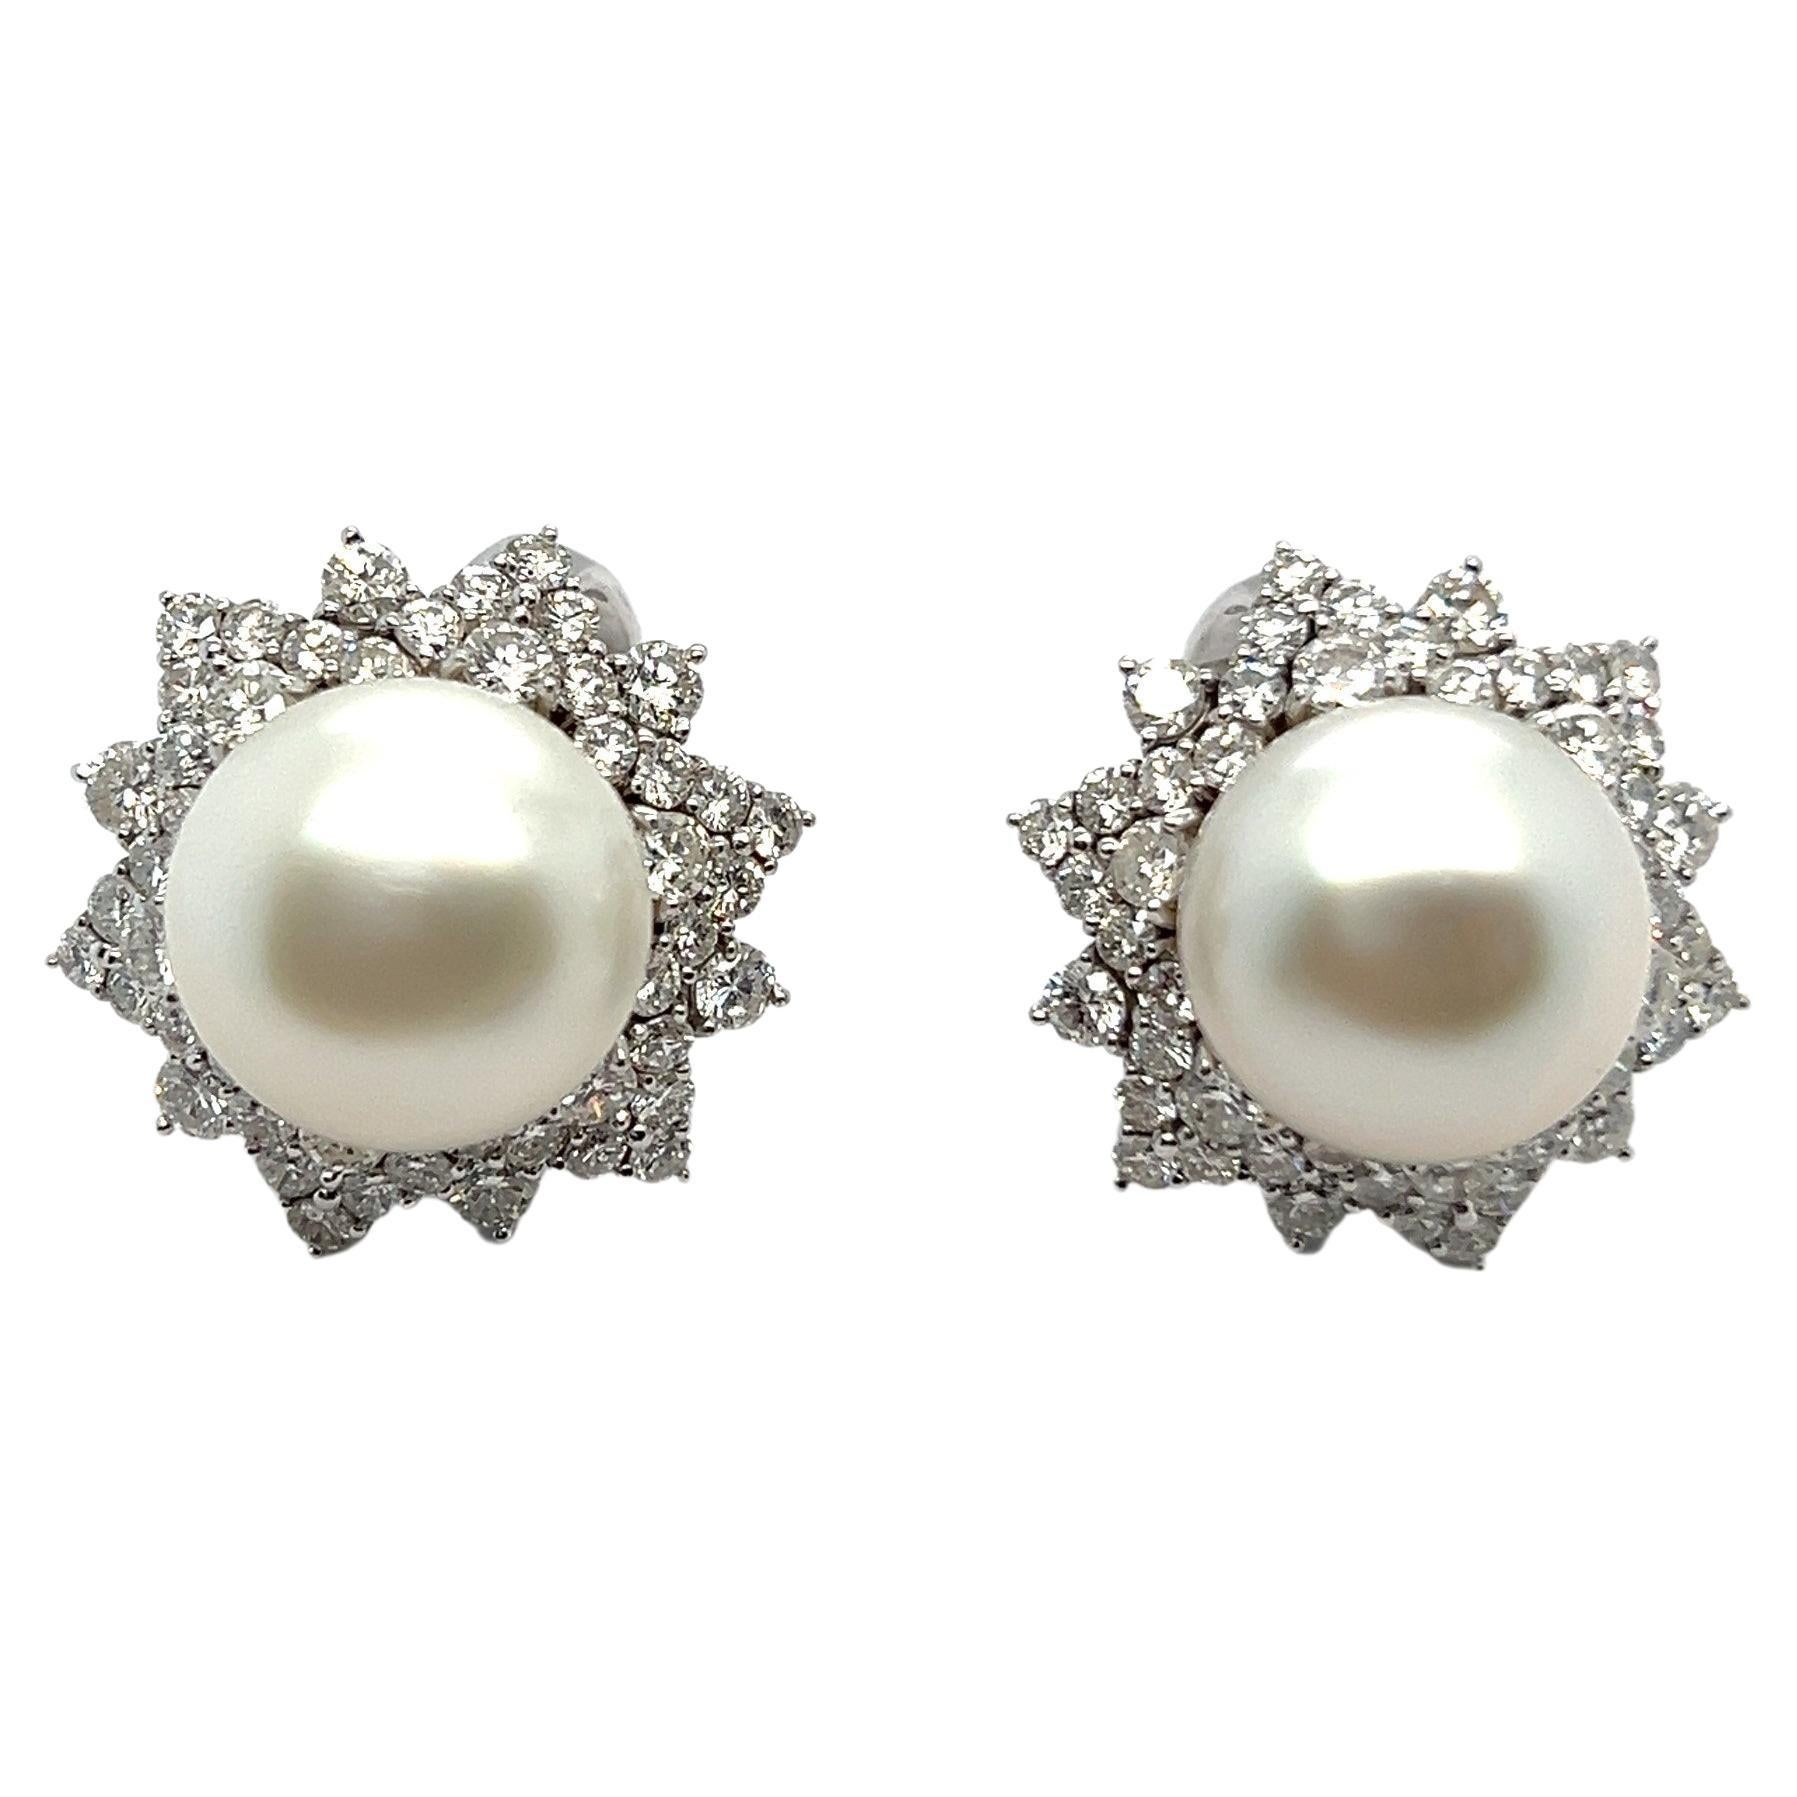 Erleben Sie himmlische Eleganz mit unseren atemberaubenden Perlenohrringen von Meister. Die aus leuchtendem 18-karätigem Weißgold gefertigten Ohrringe vereinen Raffinesse und Luxus nahtlos. In der Mitte eines jeden Ohrrings befindet sich eine